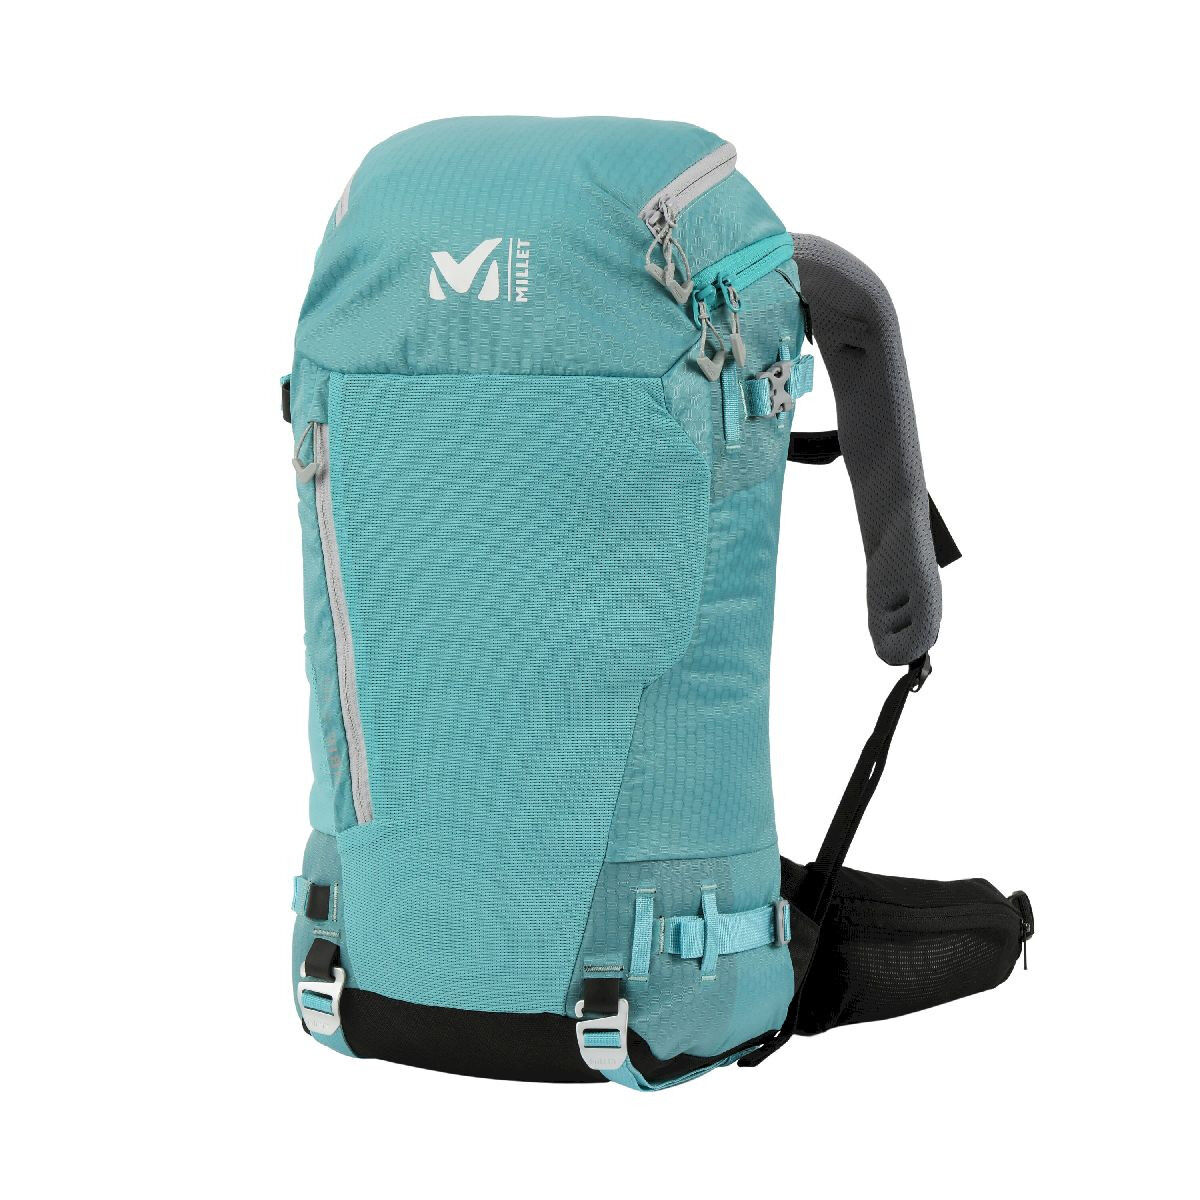 Matos] Les meilleurs sacs à dos pour une traversée à ski de rando